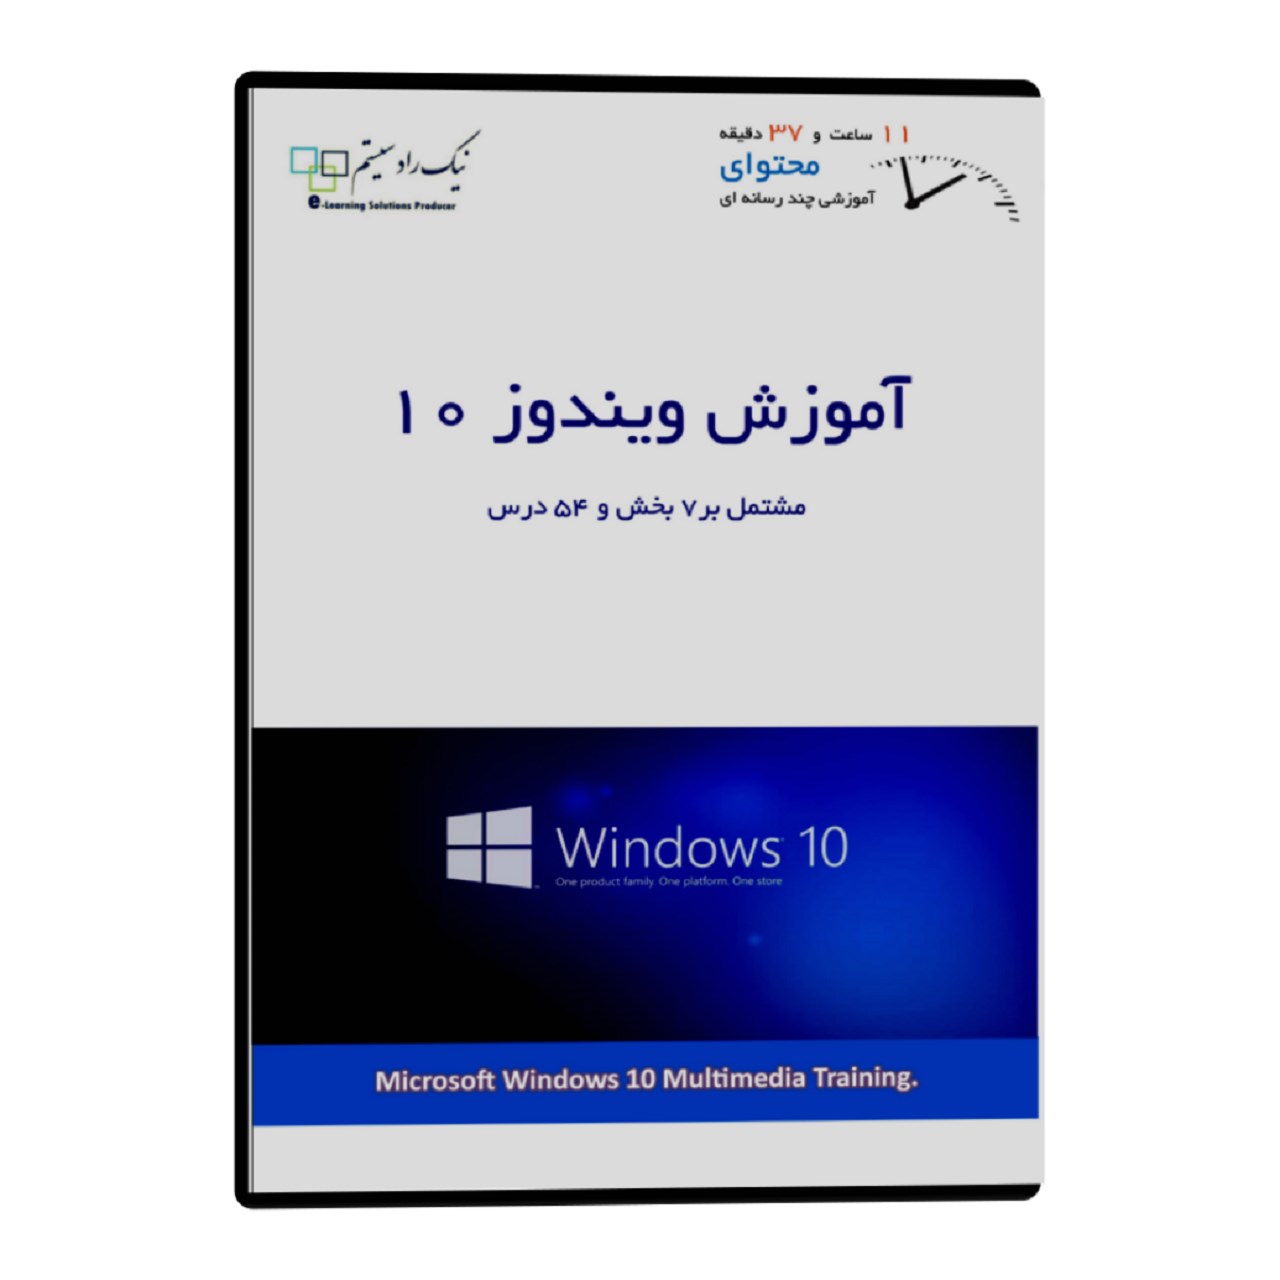 آموزش تصویری Microsoft Windows 10 نشر نیک راد سیستم